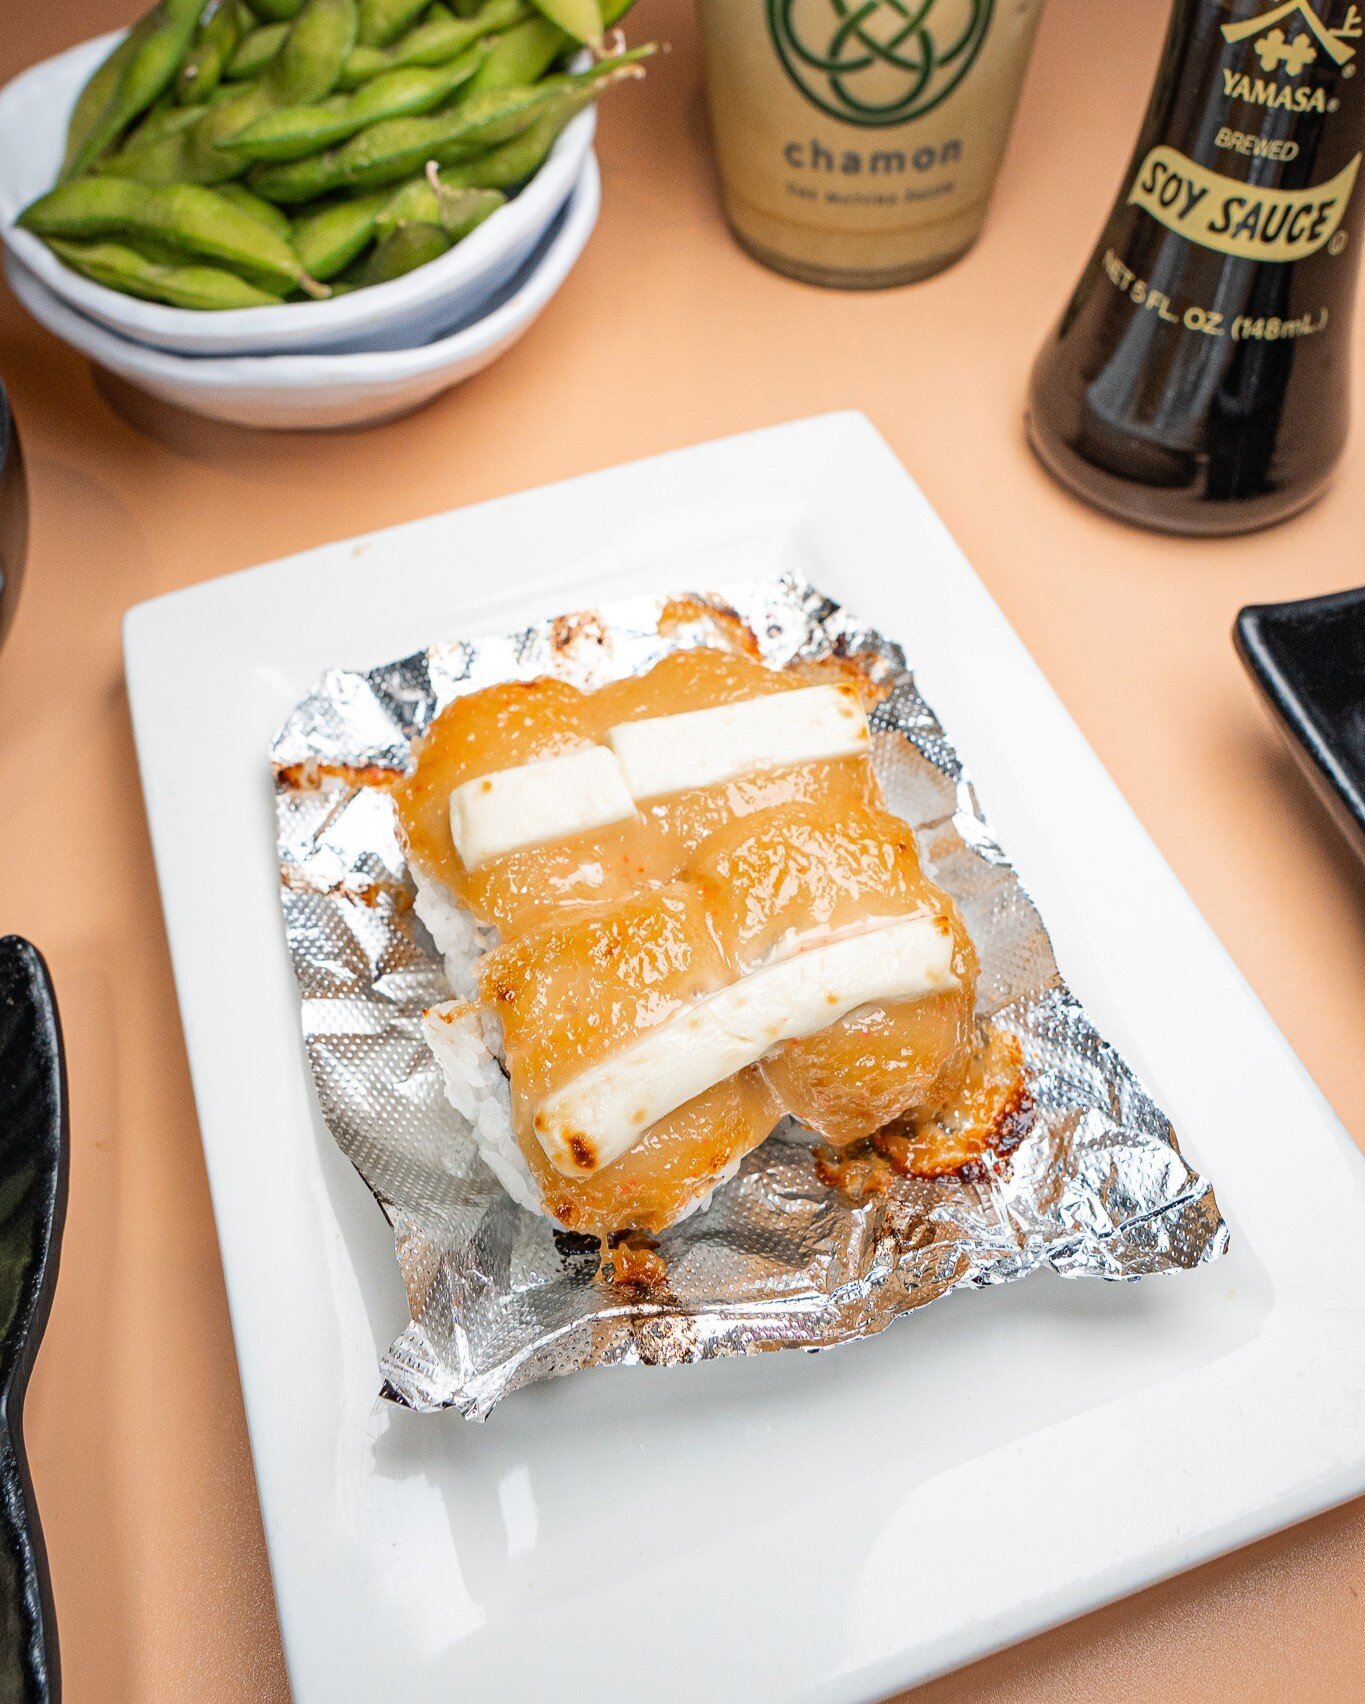 Get ready to roll into a world of flavor! A yummy treat for sushi lovers is on its way! ITADAKIMASU! #UmamiJourney 🍣✨ 

◾️◽️◾️◽️◾️◽️◾️◽️◾️◽️ 
🍣 𝗔𝗬𝗖𝗘 𝗦𝗨𝗦𝗛𝗜 𝗛𝗢𝗨𝗦𝗘 𝗚𝗢𝗬𝗘𝗠𝗢𝗡 
⏰ ᴅᴀɪʟʏ: 12:00 ᴘᴍ - 11:00 ᴘᴍ 
⏰ ʟᴀꜱᴛ ꜱᴇᴀᴛɪɴɢ ꜰᴏʀ ᴀʏᴄᴇ 10ᴘ